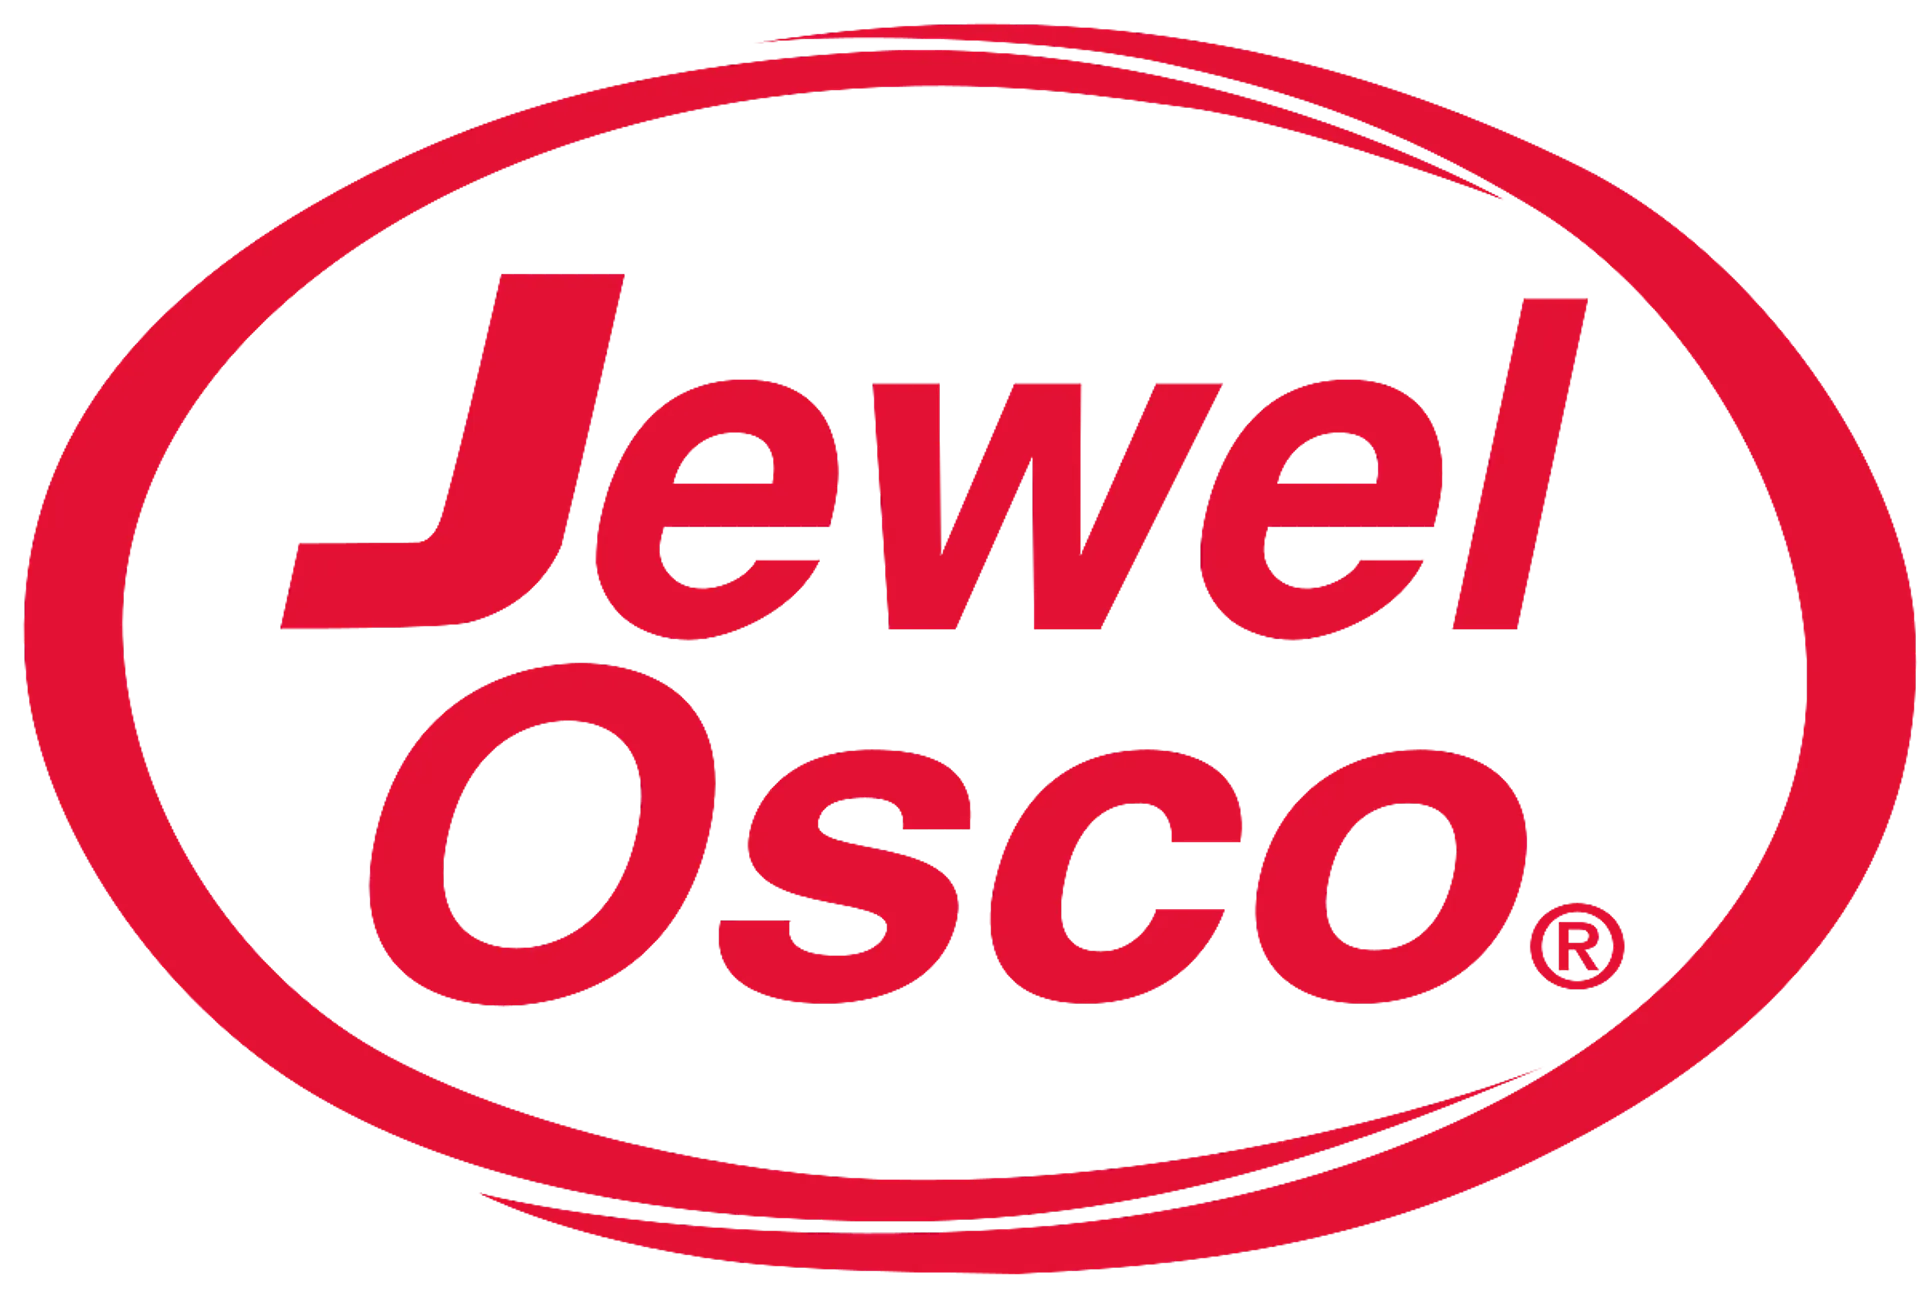 JEWEL OSCO logo